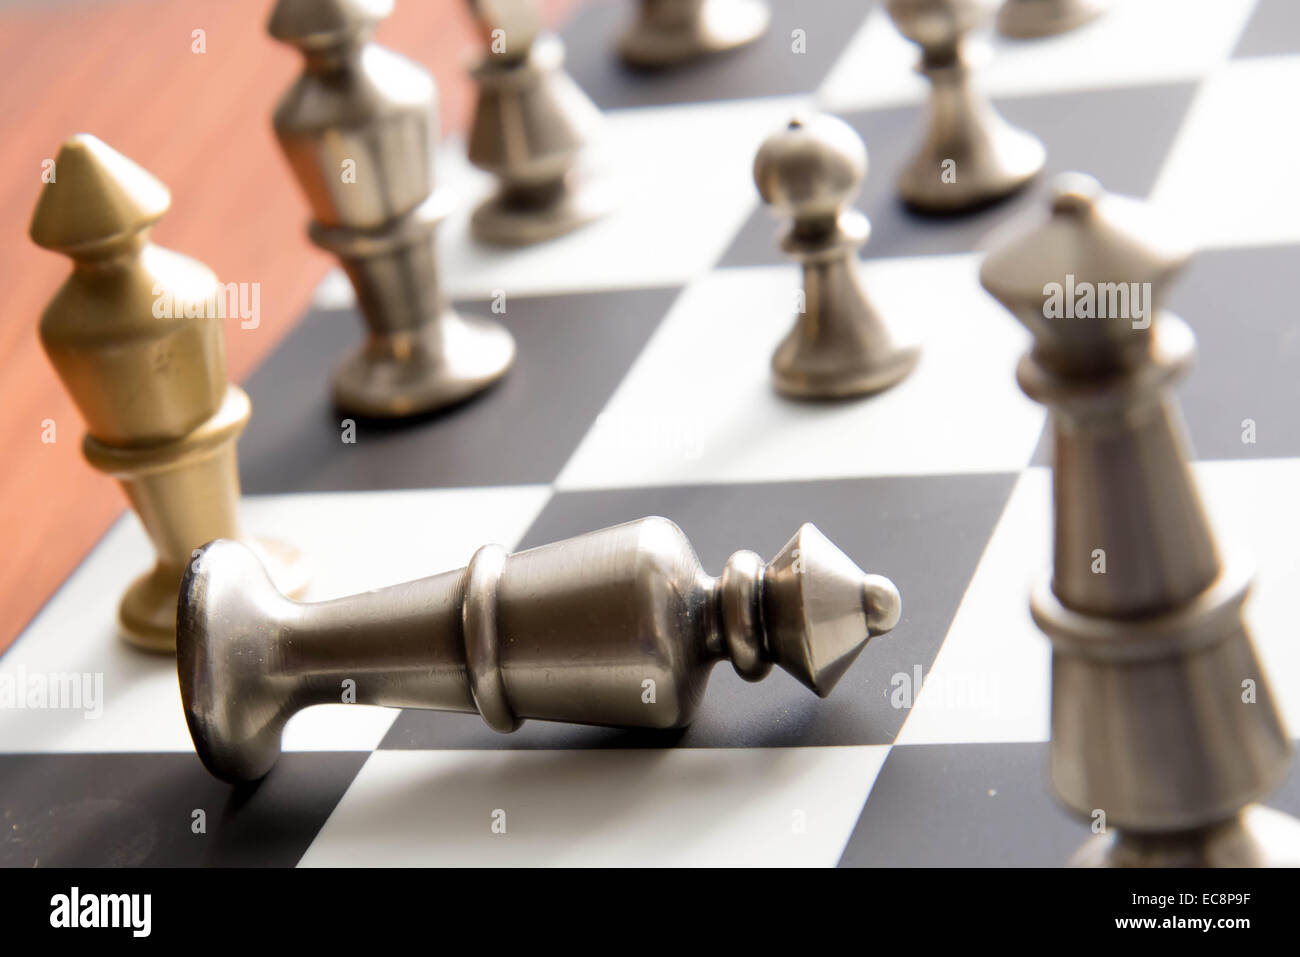 Jeu d'échecs classique - fallen king or on chessboard Banque D'Images